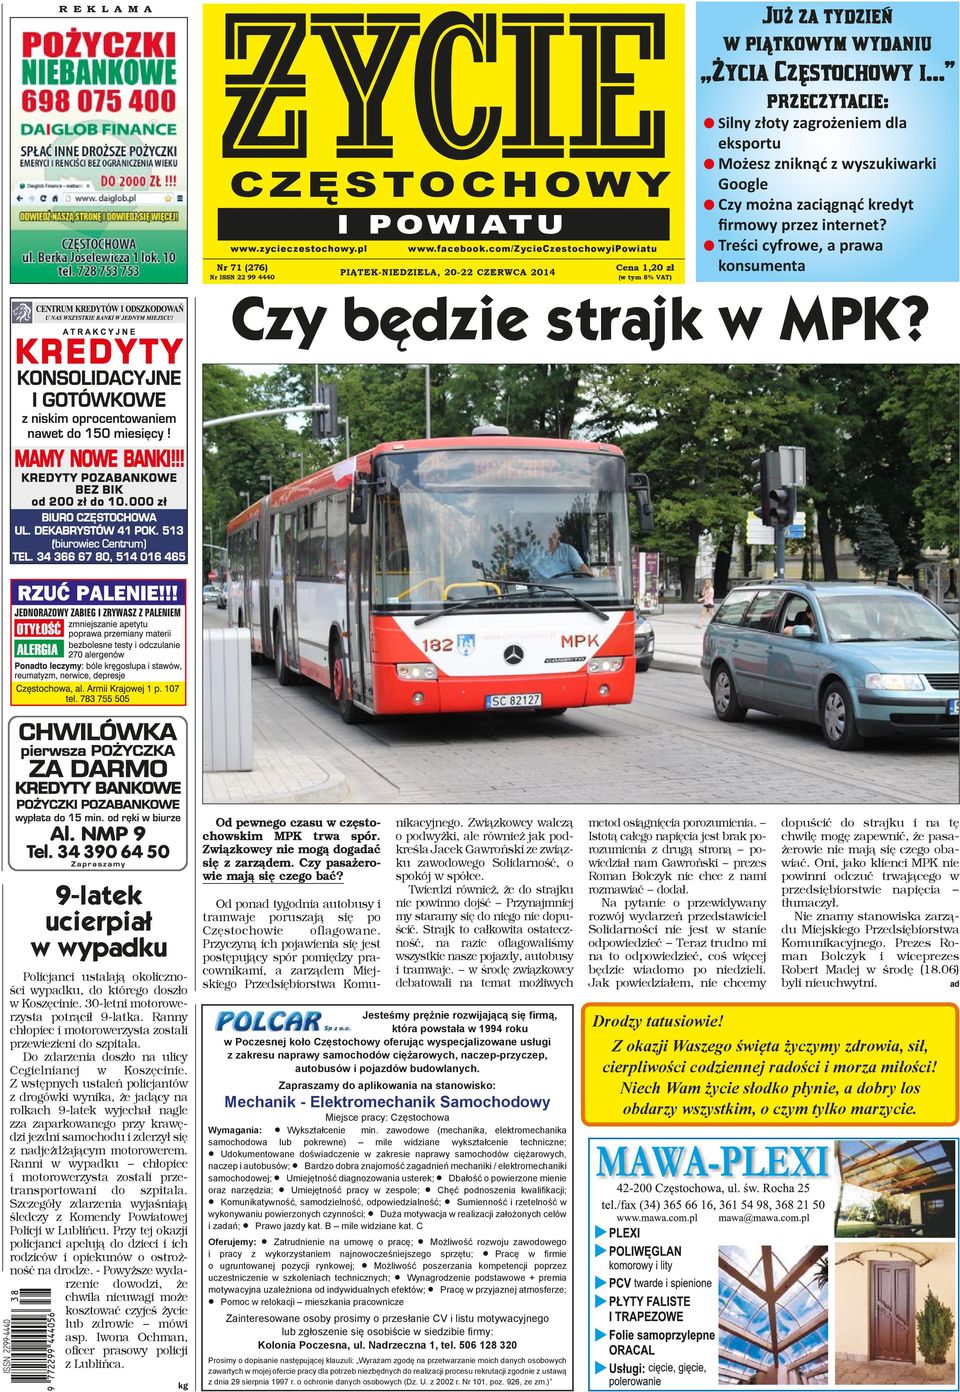 Czy będzie strajk w MPK? - PDF Free Download